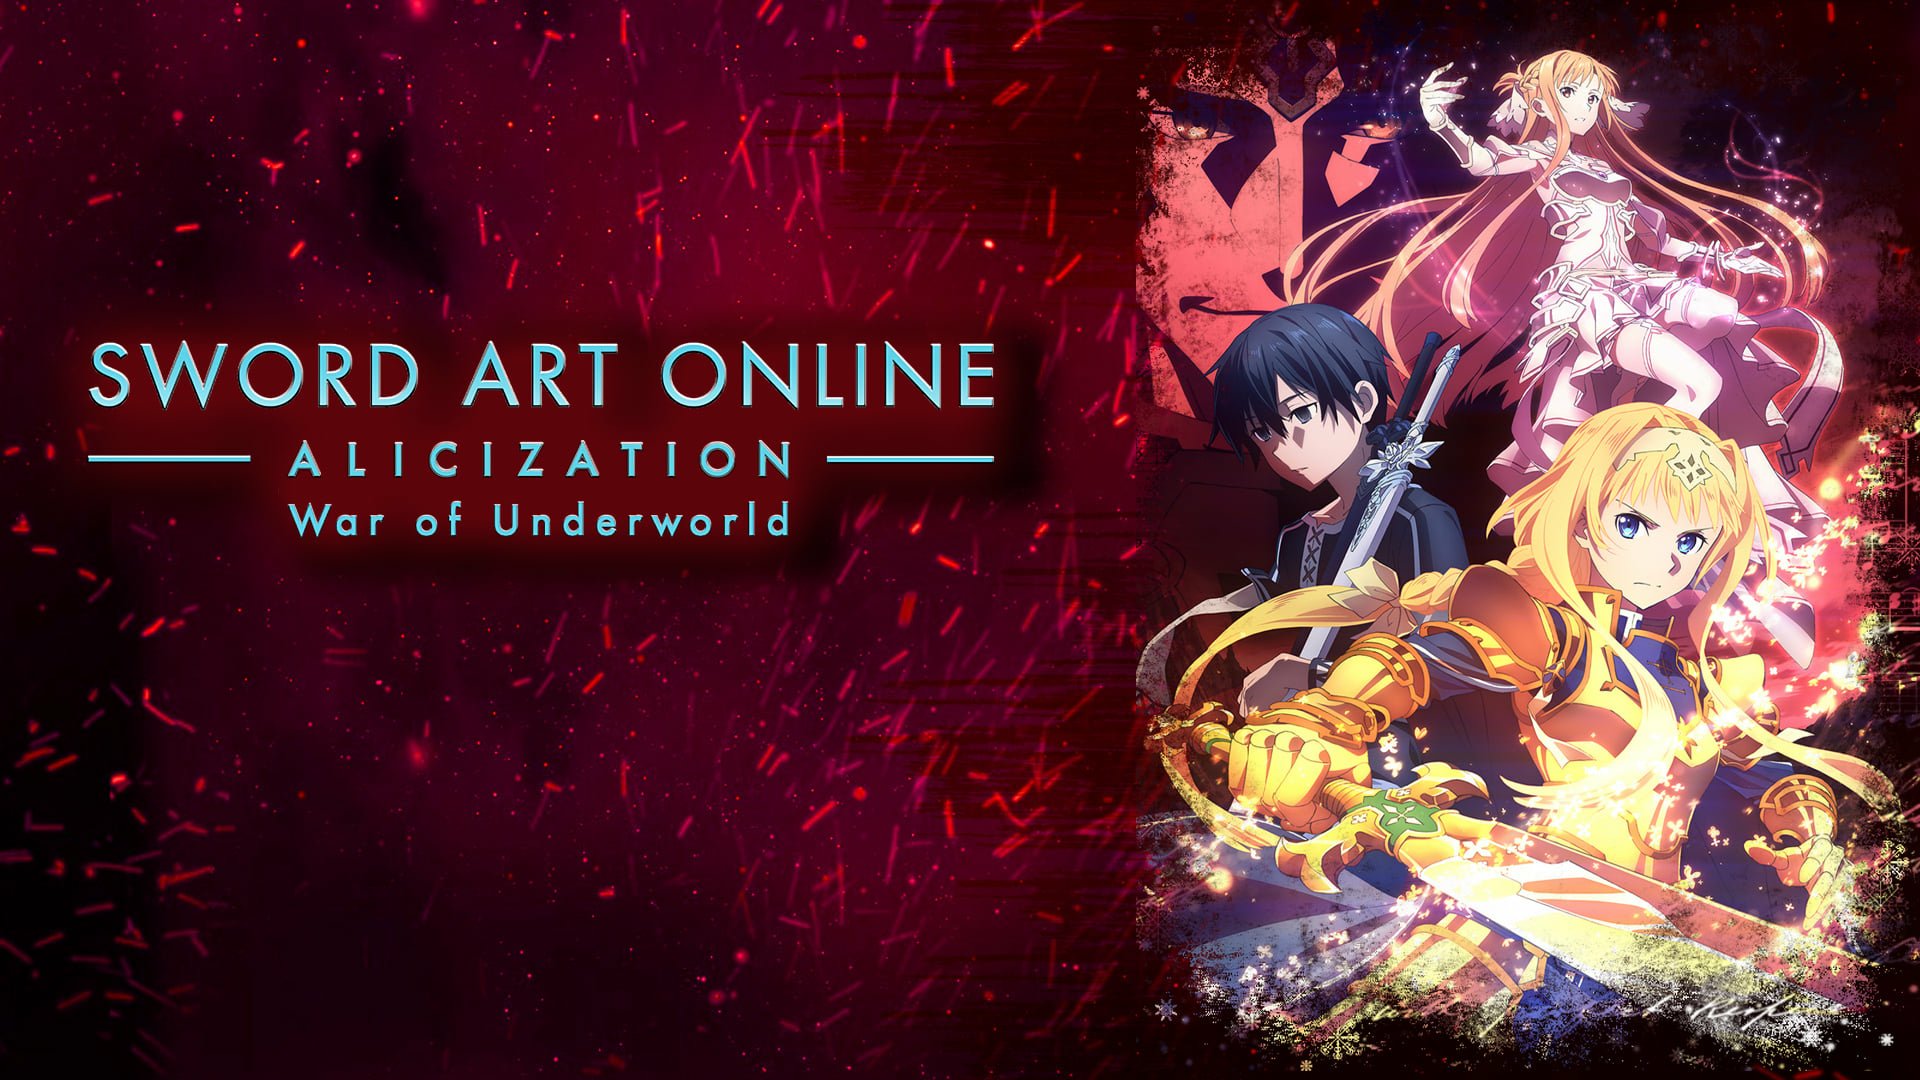 1. Sword Art Online: Alicization - War of Underworld Part 2 - wide 7